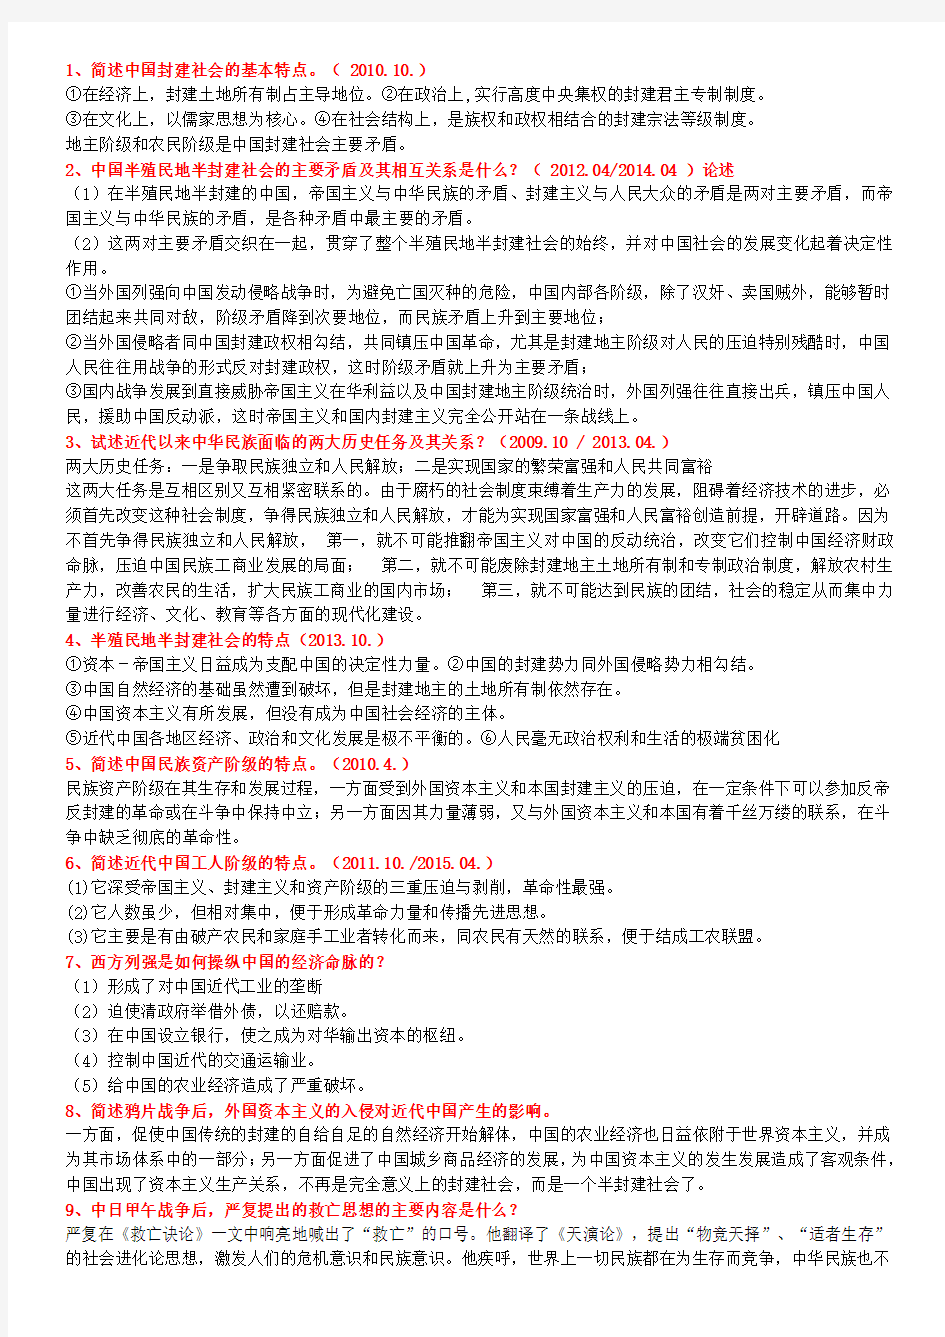 自考中国近代史纲要(2008年--2015年)简述题和论述题